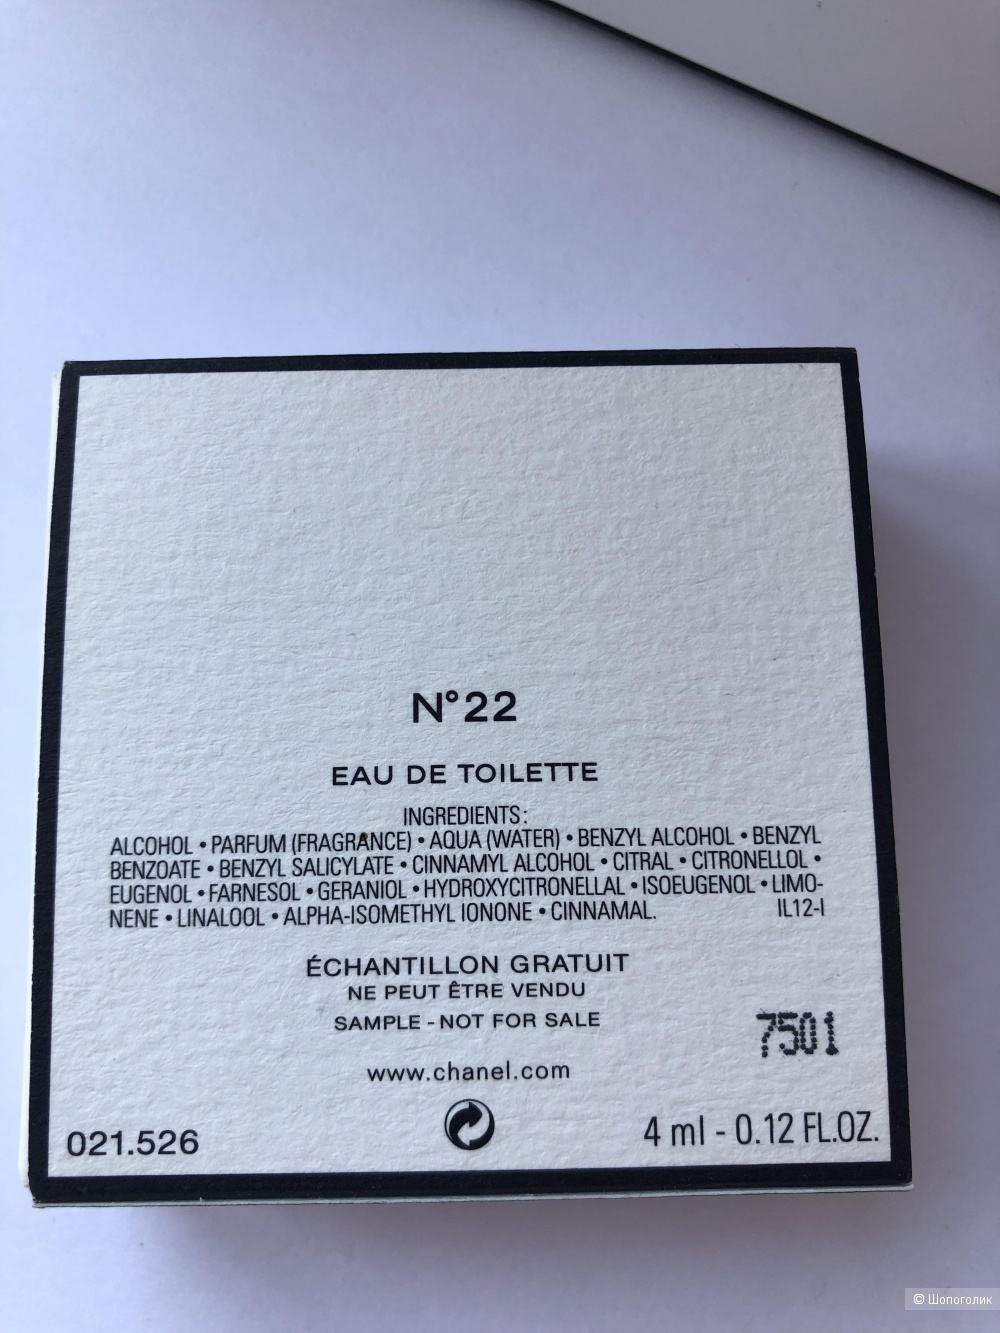 Chanel LES EXCLUSIFS DE CHANEL 22, миниатюра 4 мл